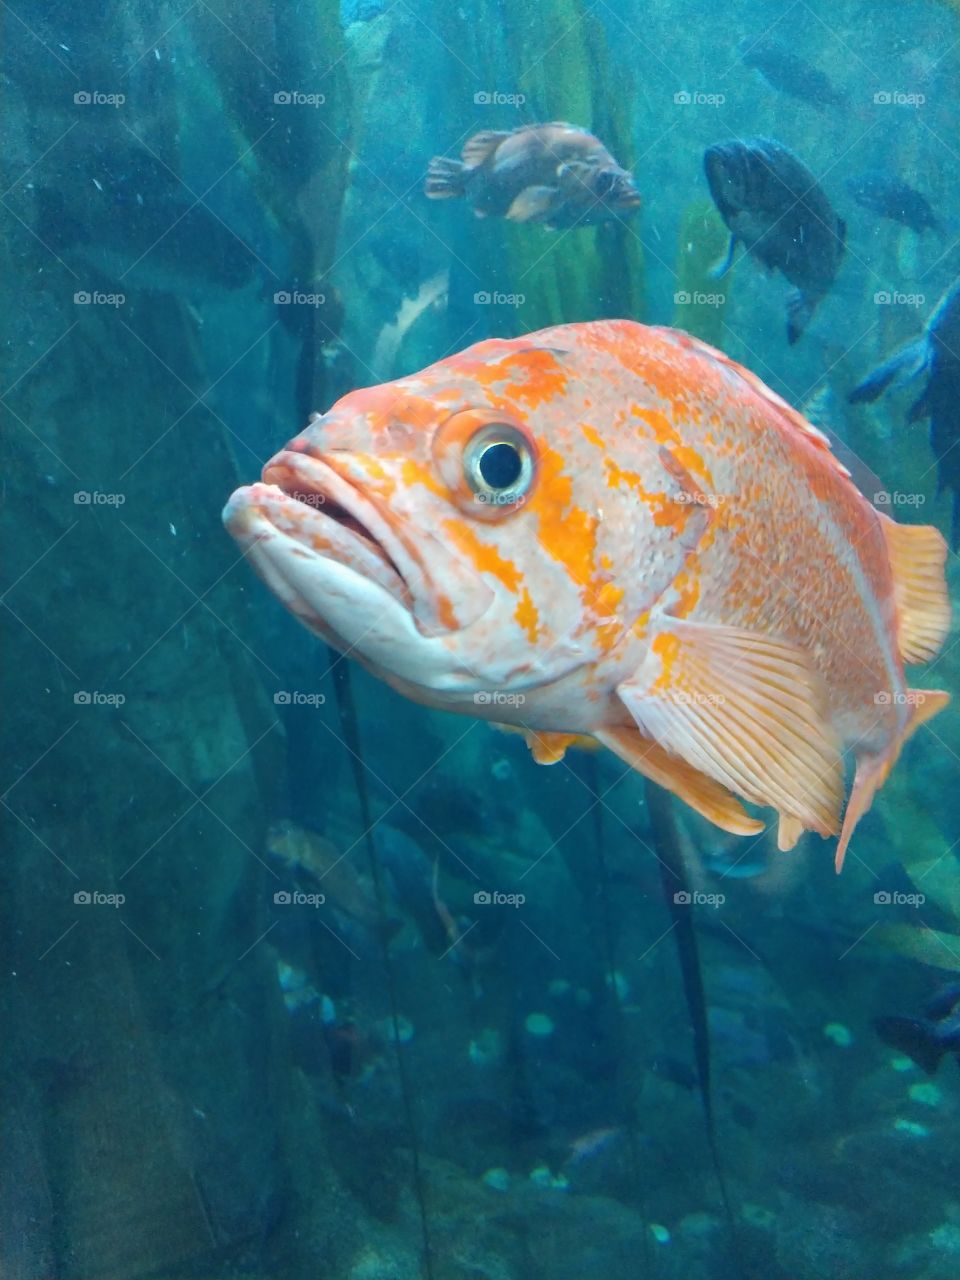 Oregon coast aquarium